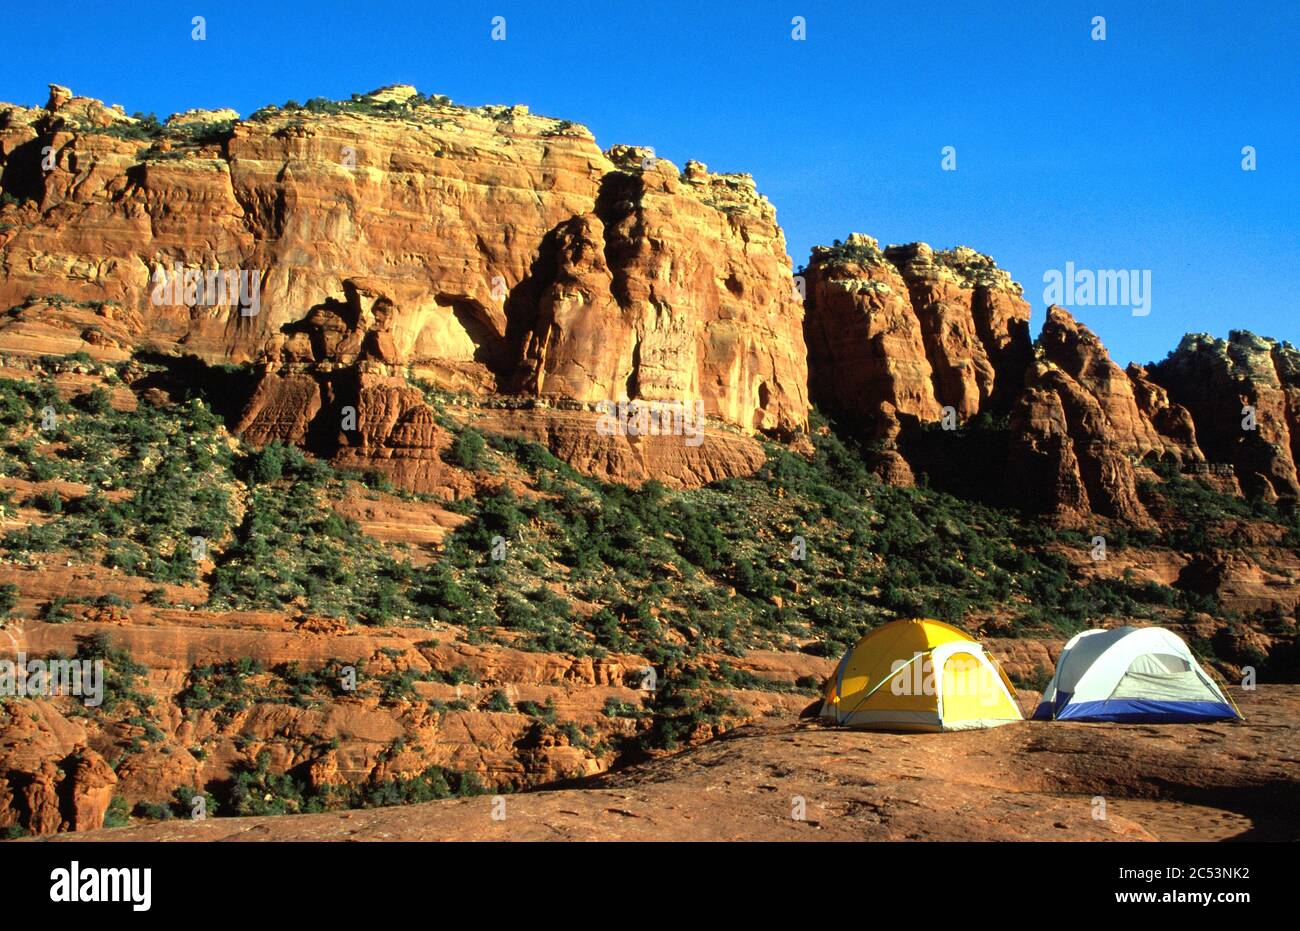 Camping on the red rocks, Sedona, Arizona Stock Photo